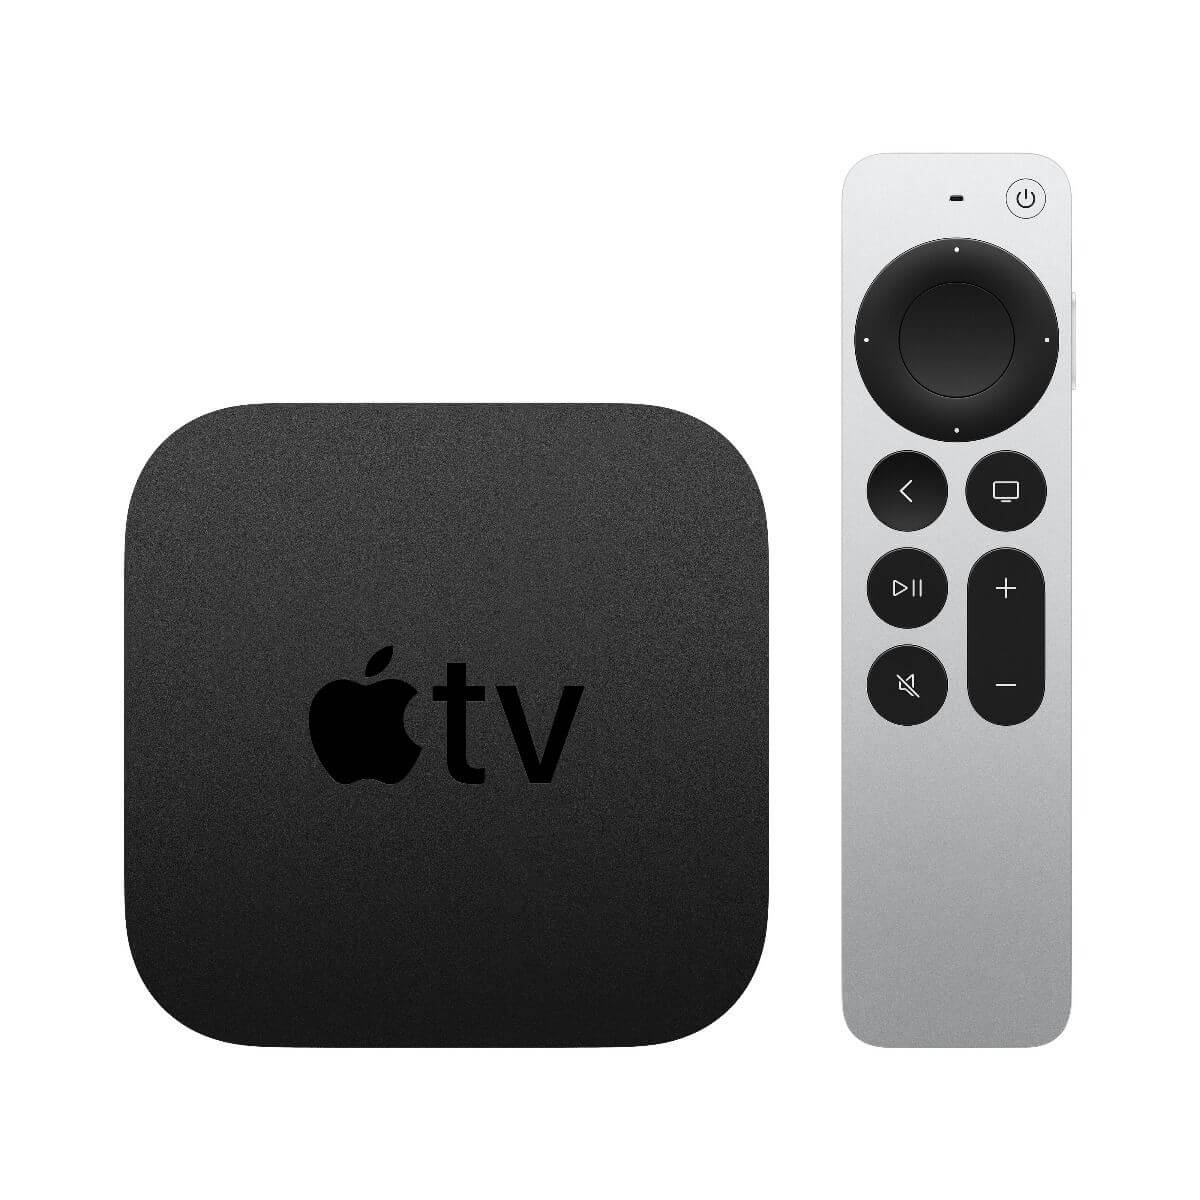 Apple TV 4K (2021) 64 GB - гледайте безжично в 4K, играйте и сваляйте приложения от вашия iPhone, iPad, Mac, директно върху вашия телевизор